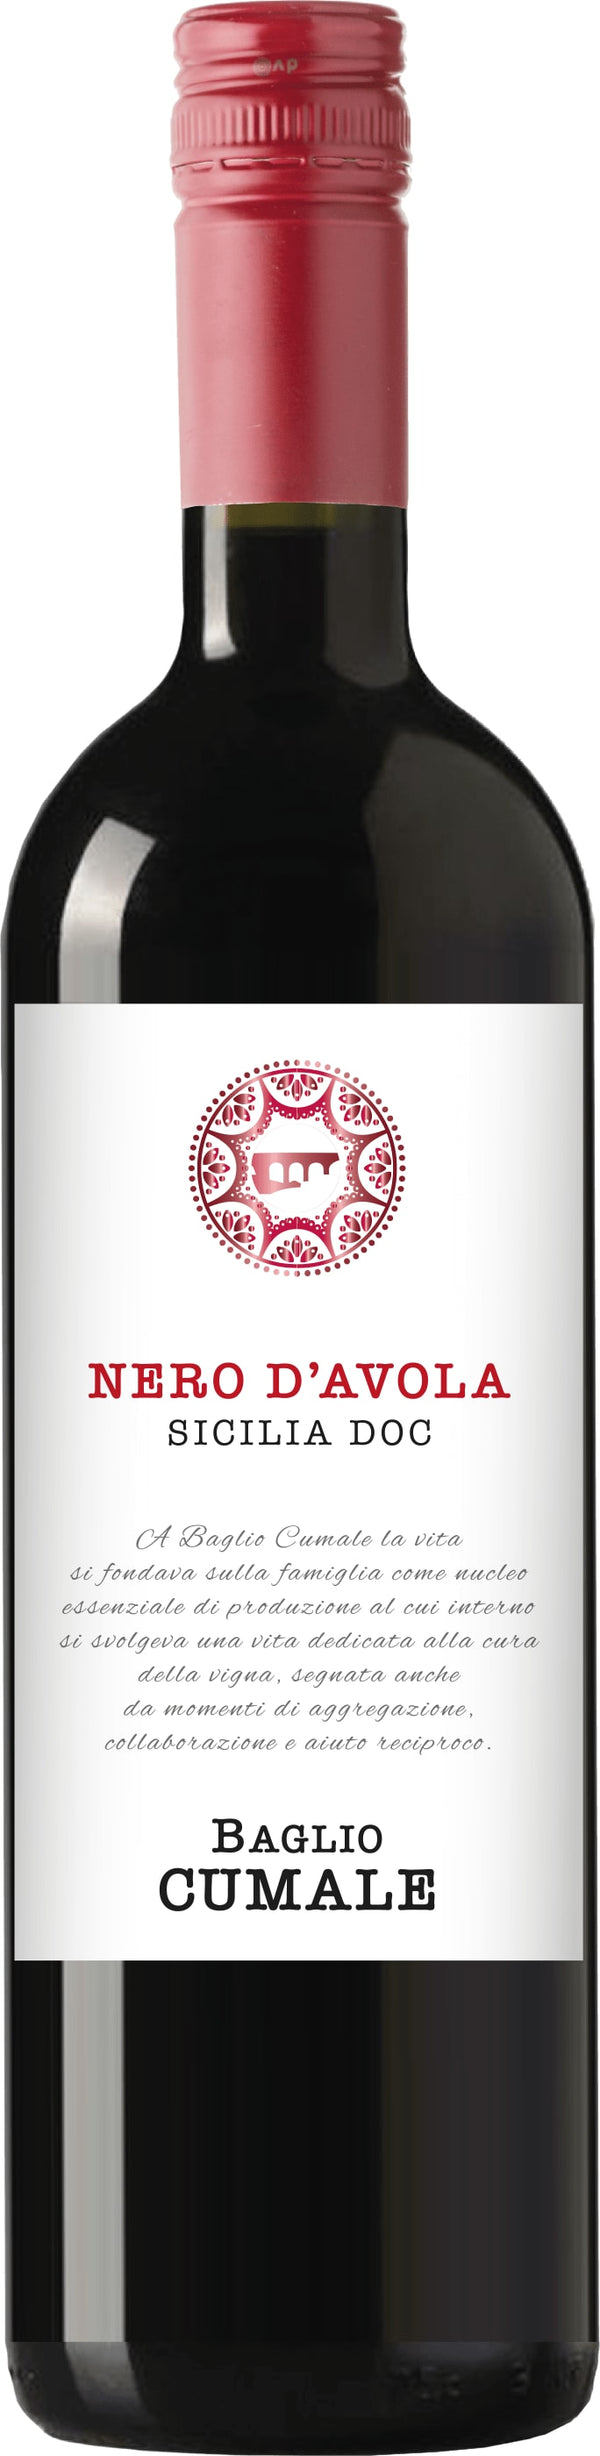 Baglio Cumale Nero dAvola 22 DOC 6x75cl - Just Wines 